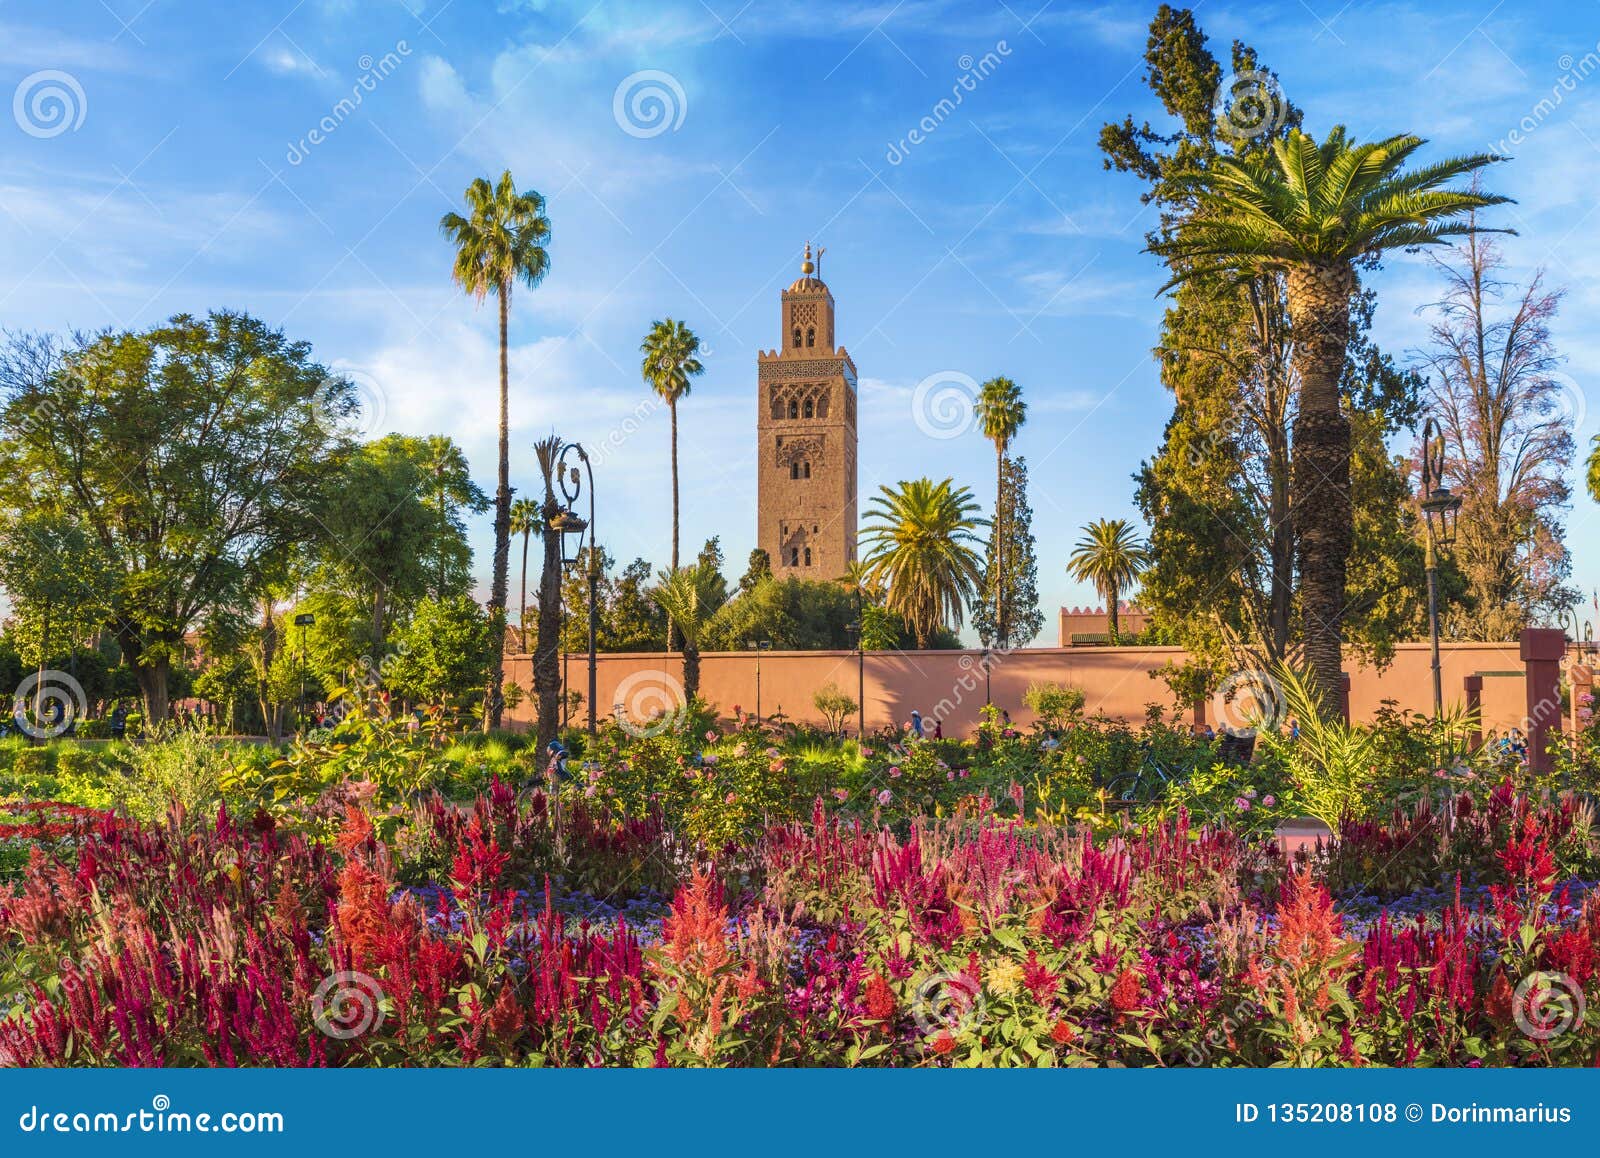 koutoubia mosque and garden in marrakesh